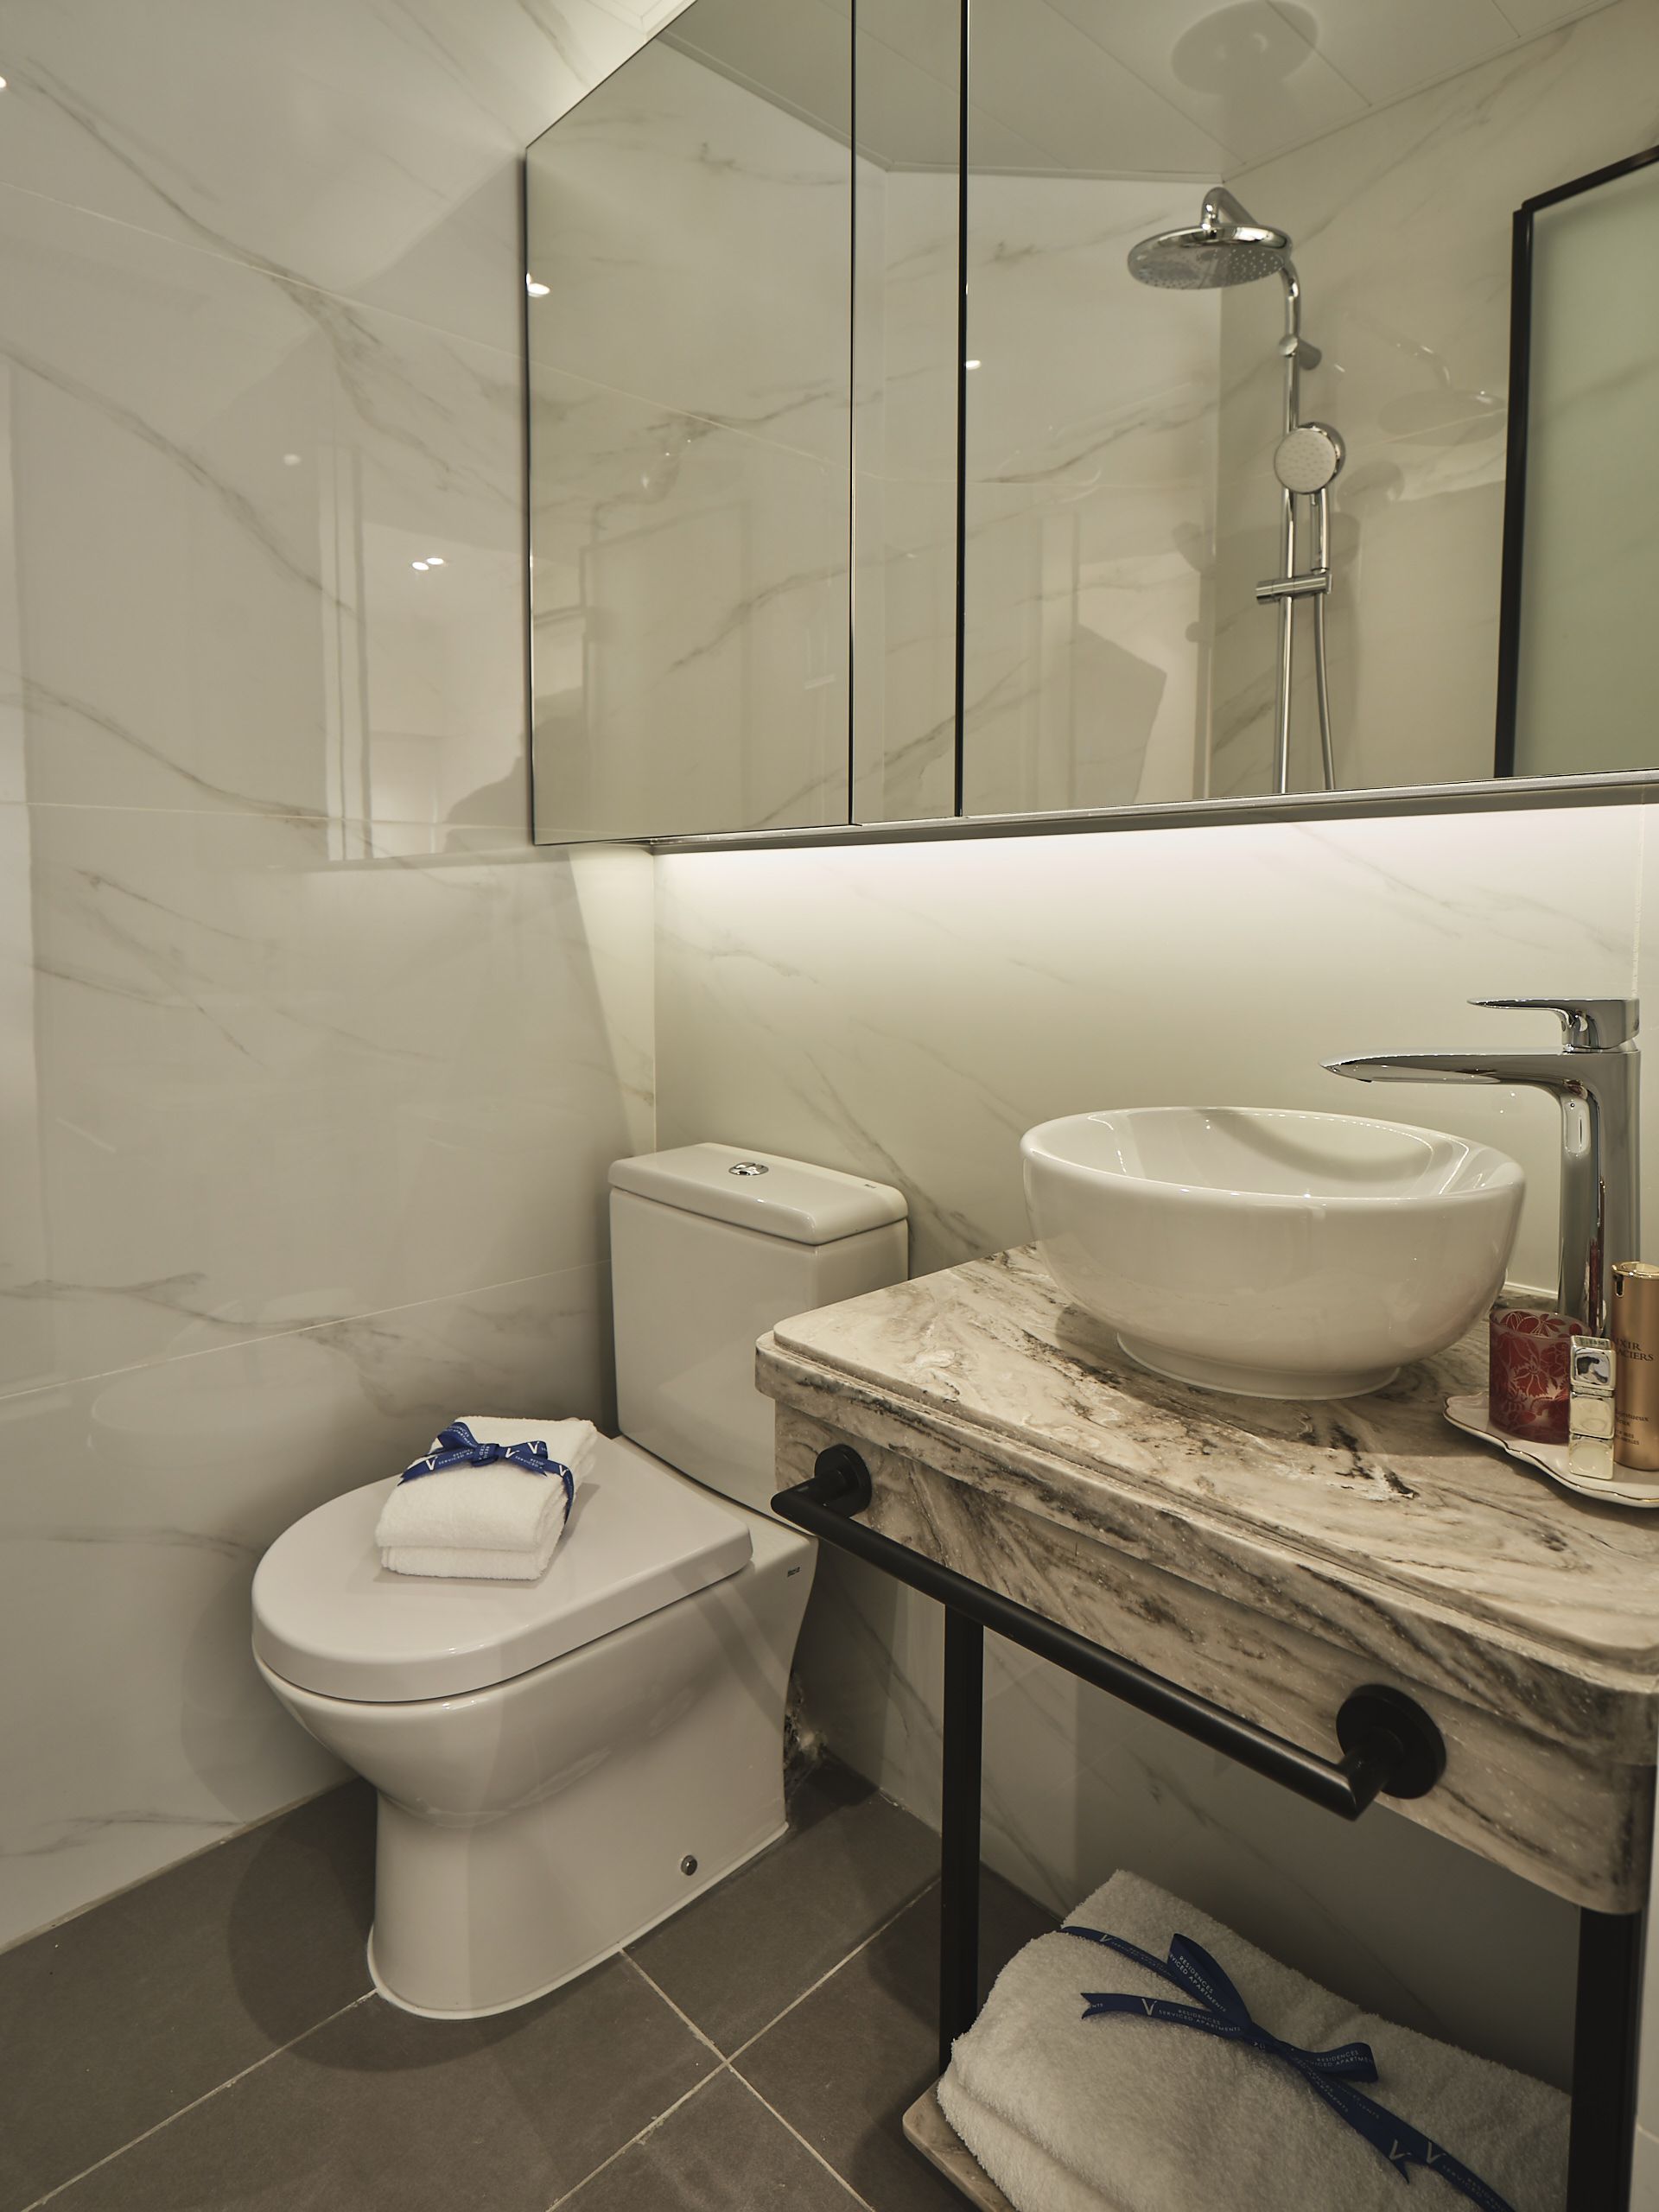 The V 銅鑼灣怡和街服務式住宅開放式客房浴室